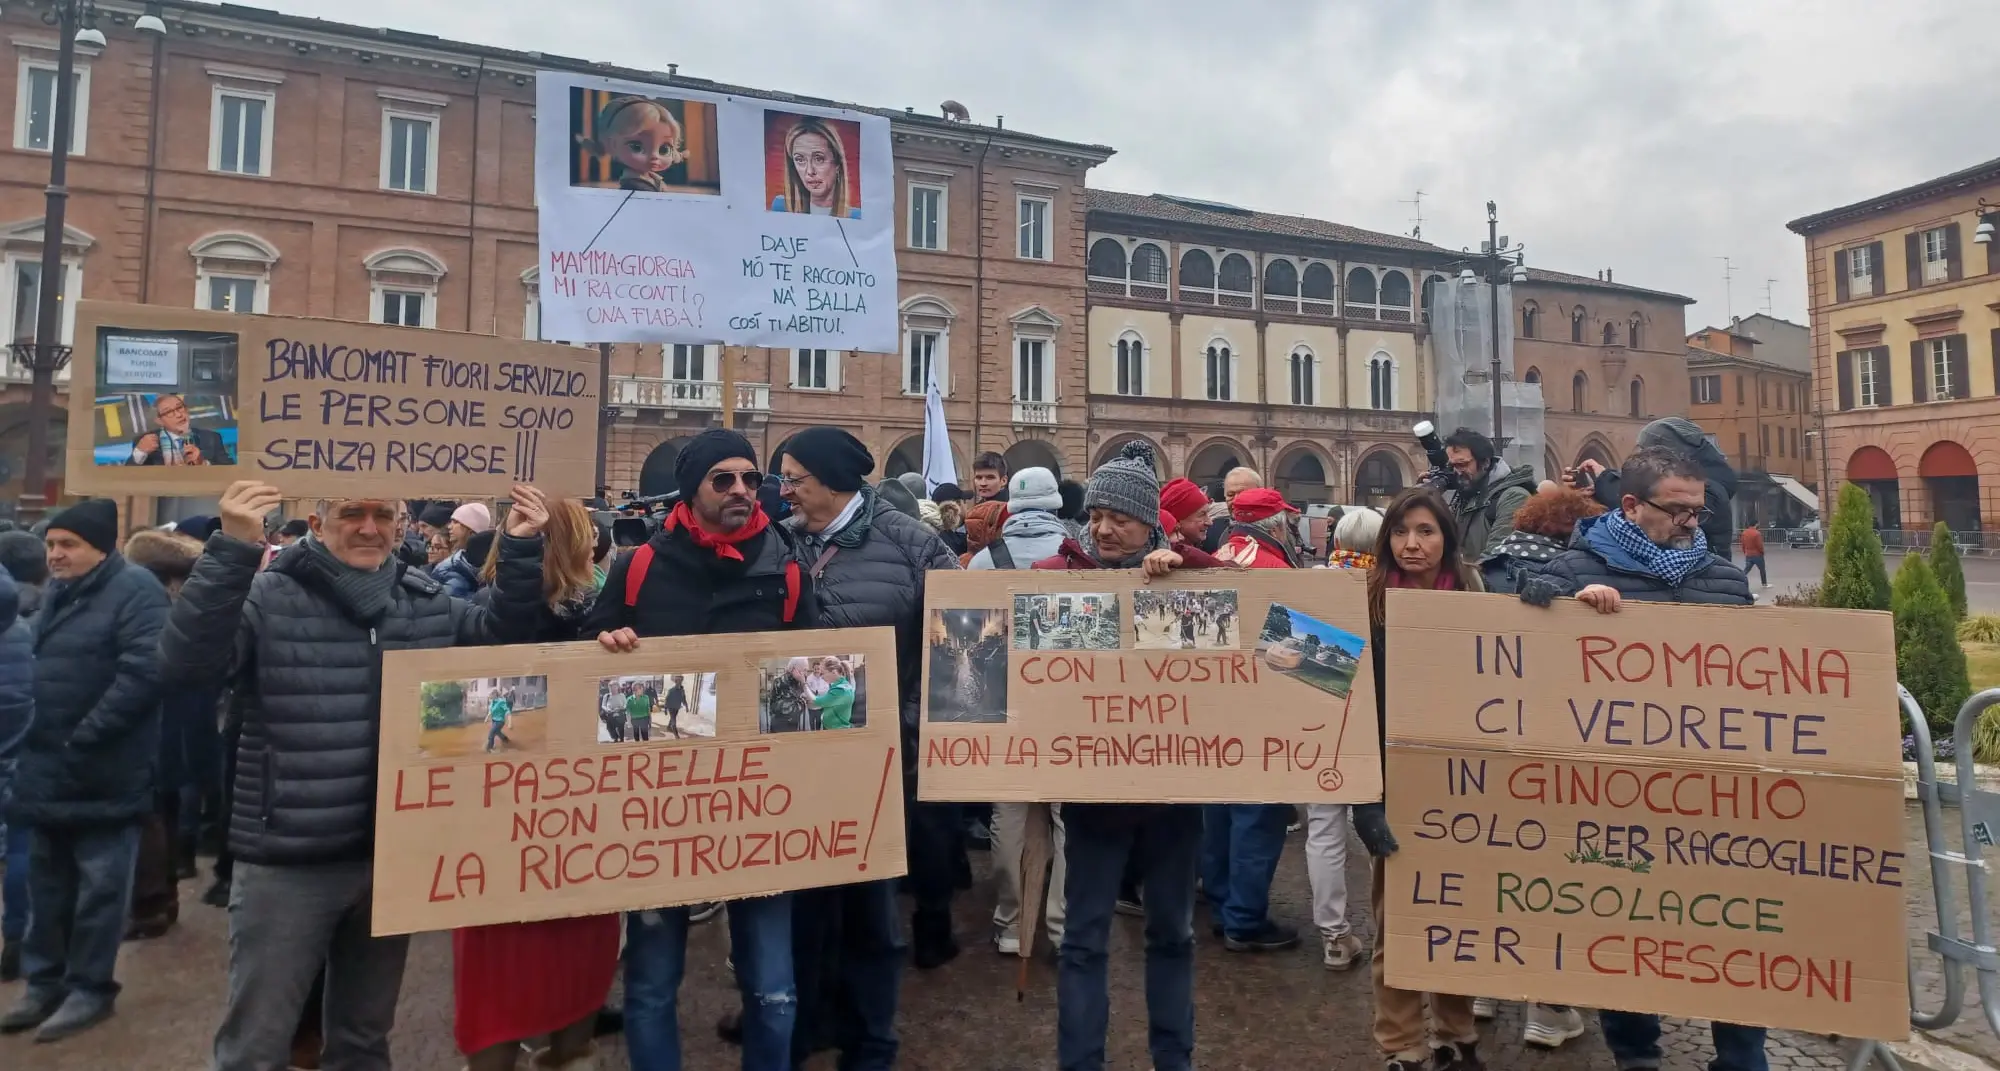 Alluvionati dimenticati. La protesta contro Meloni a Forlì